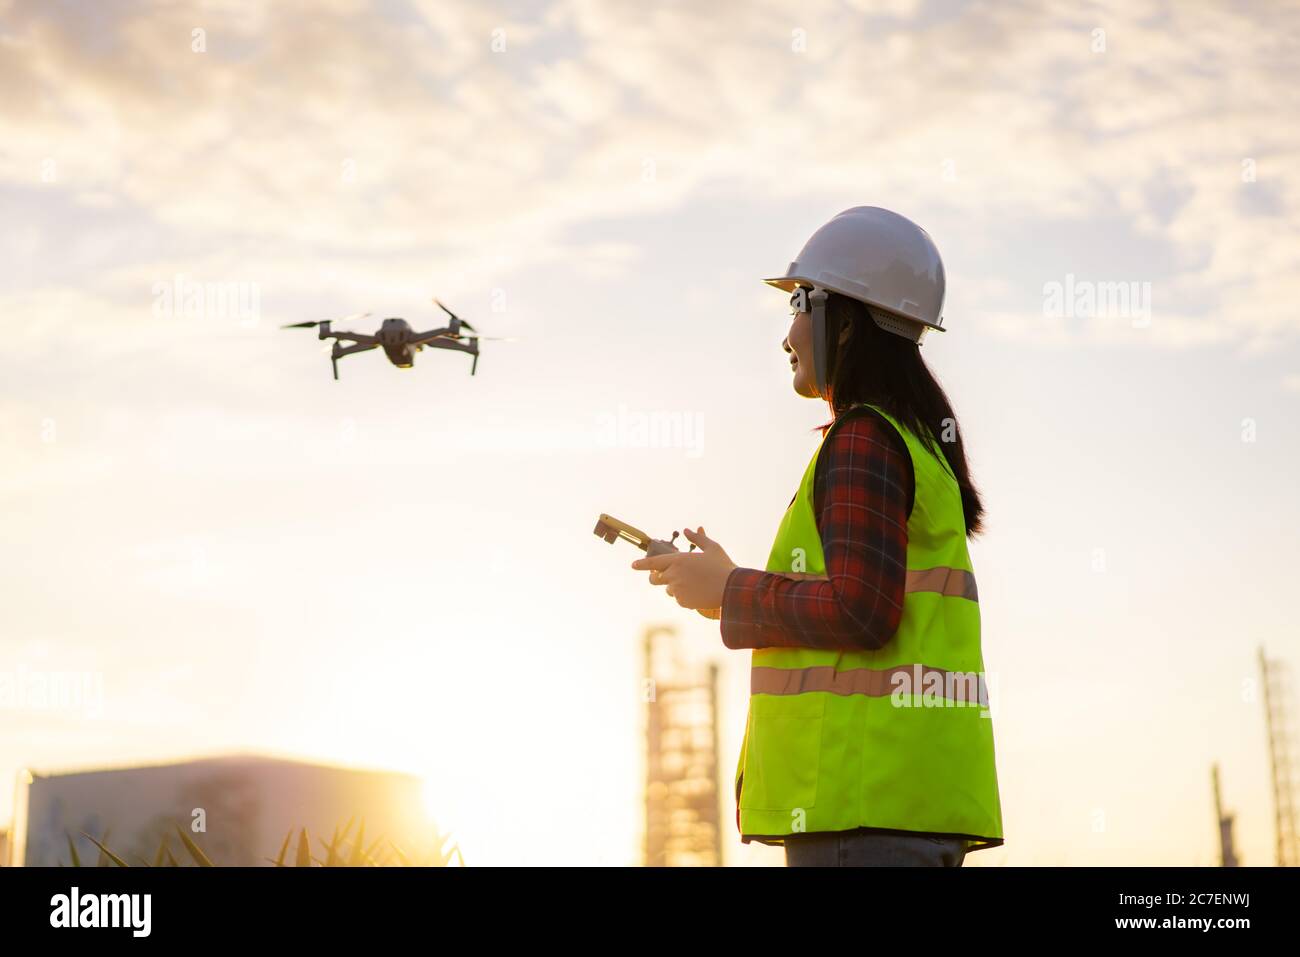 Une femme ingénieur asiatique exploite un drone volant au-dessus de l'usine de raffinerie de pétrole lors d'une étude de chantier de construction au lever du soleil dans le cadre d'un projet de génie civil. Banque D'Images